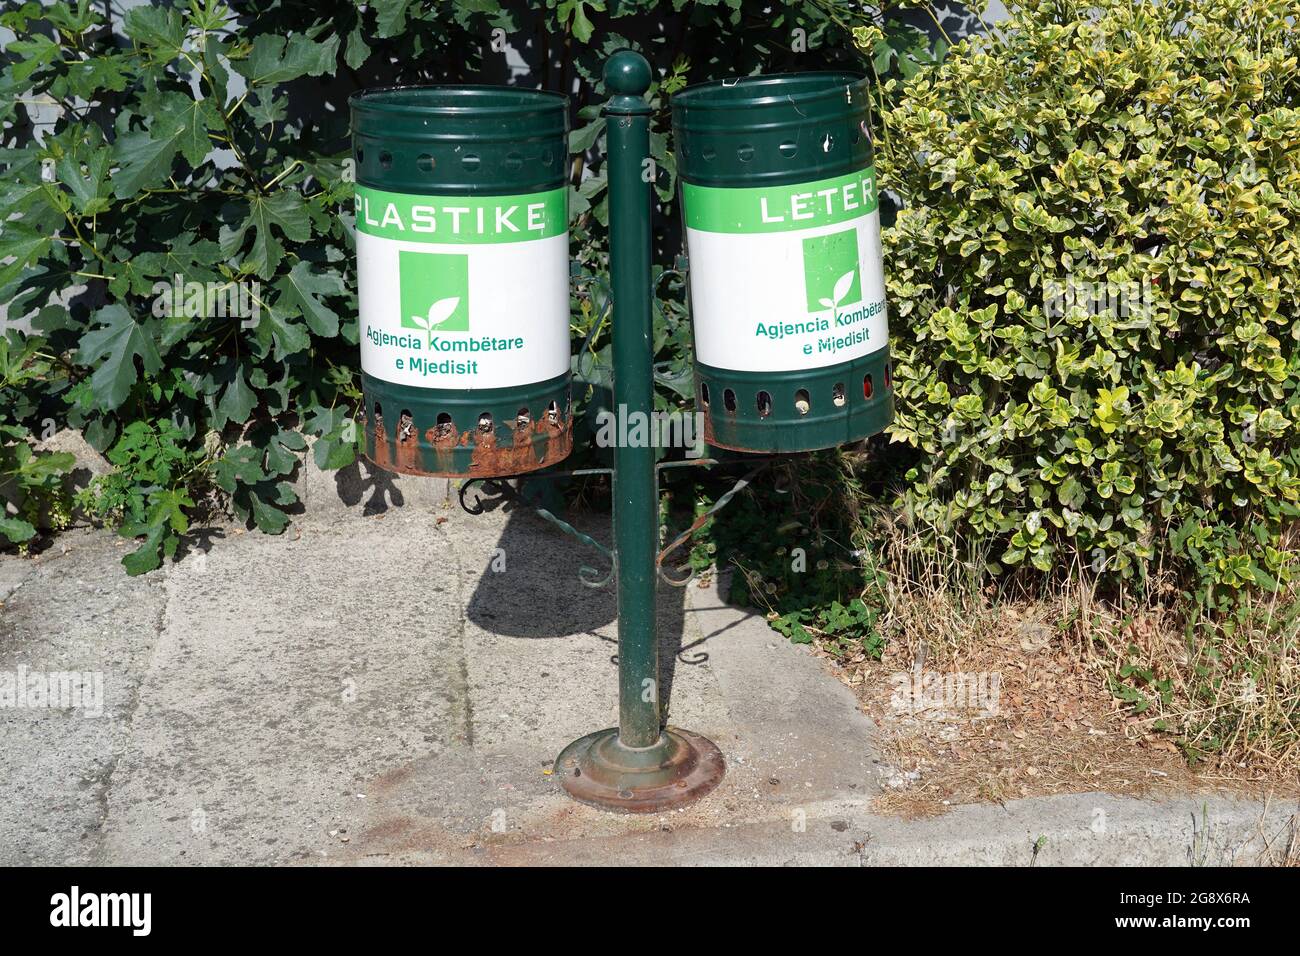 13 juin 2021, Albanie, Tirana: Deux poubelles portant des étiquettes pour 'Plastike' (l., plastique) et 'Leter' (papier). Photo: Peter Endig/dpa-Zentralbild/ZB Banque D'Images